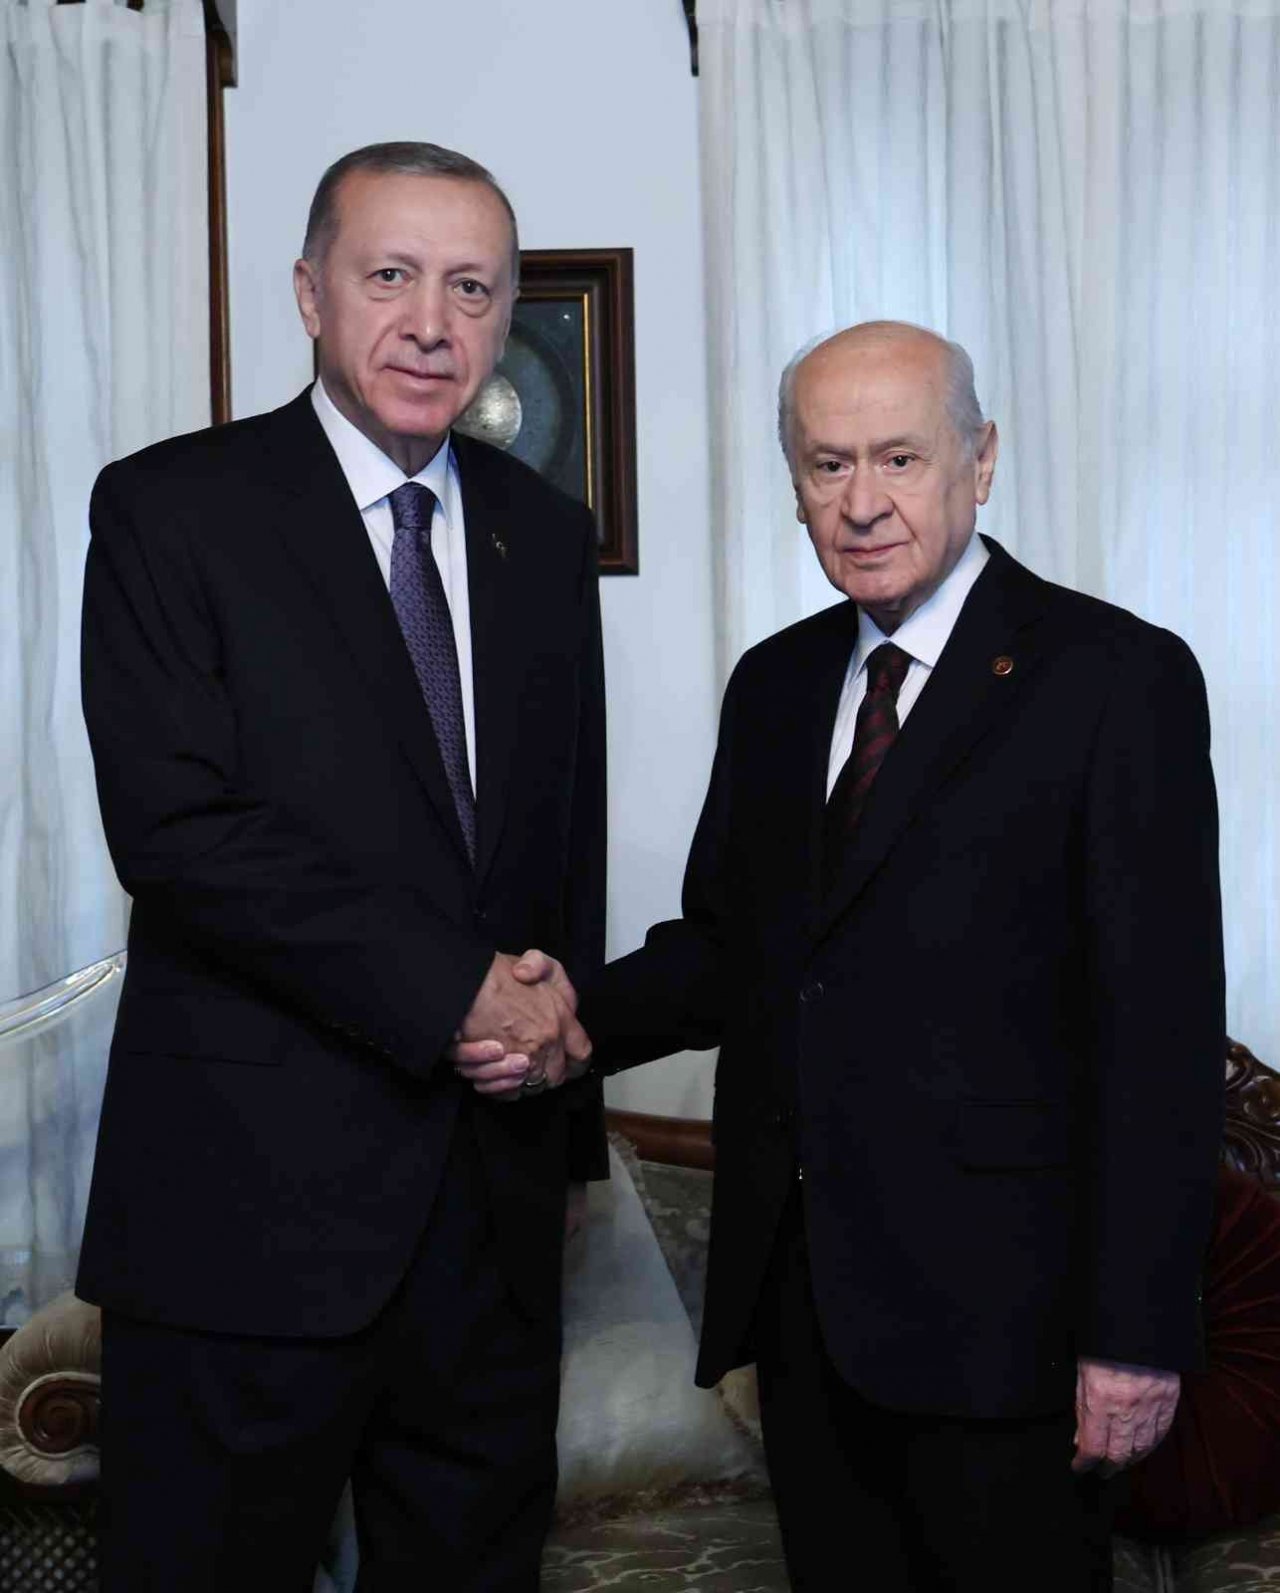 Cumhurbaşkanı Recep Tayyip Erdoğan ile Milliyetçi Hareket Partisi Genel Başkanı Devlet Bahçeli arasındaki ikili görüşme sona erdi. Görüşme yaklaşık 1 saat sürdü.